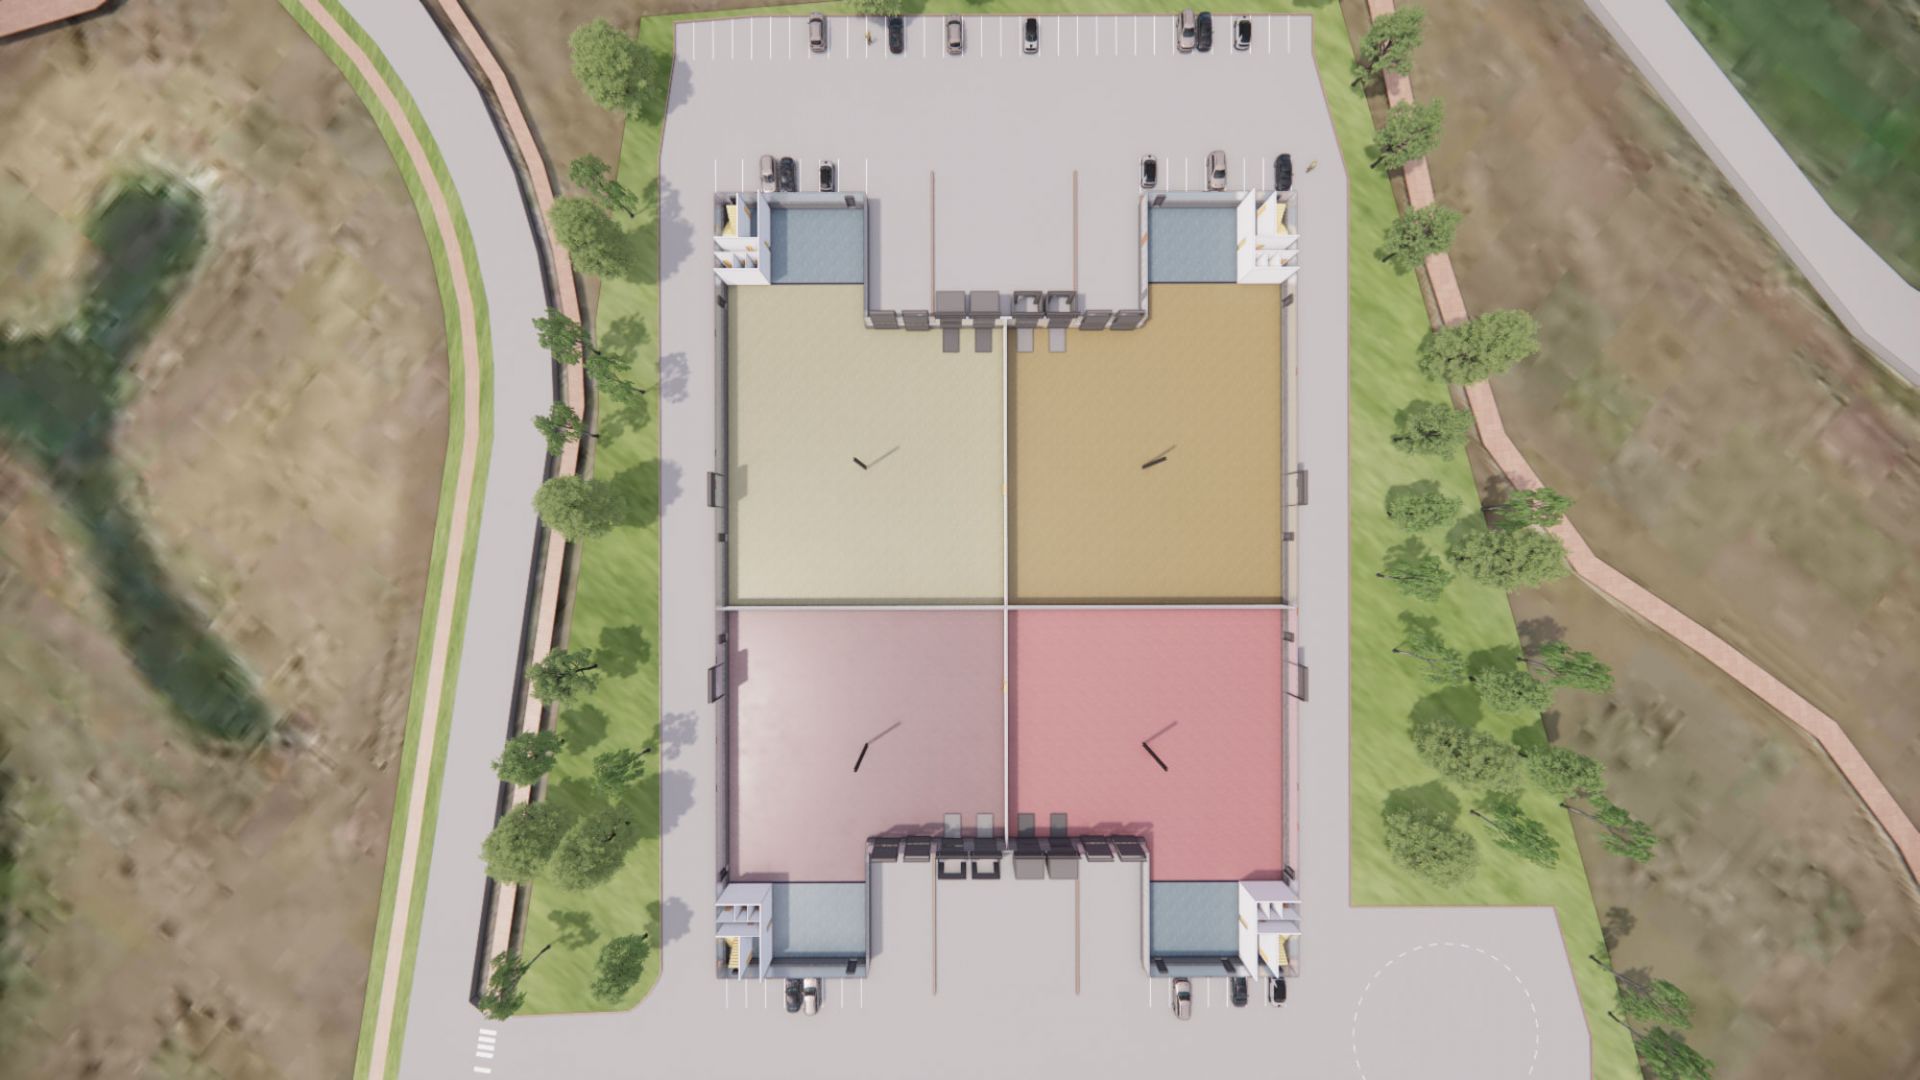 Animierte Darstellung der Aufteilung der Halle in vier getrennte Bereiche, die jeweils über einen eigenen Entladebereich für LKW, Parkplätze und Büroräume verfügen.